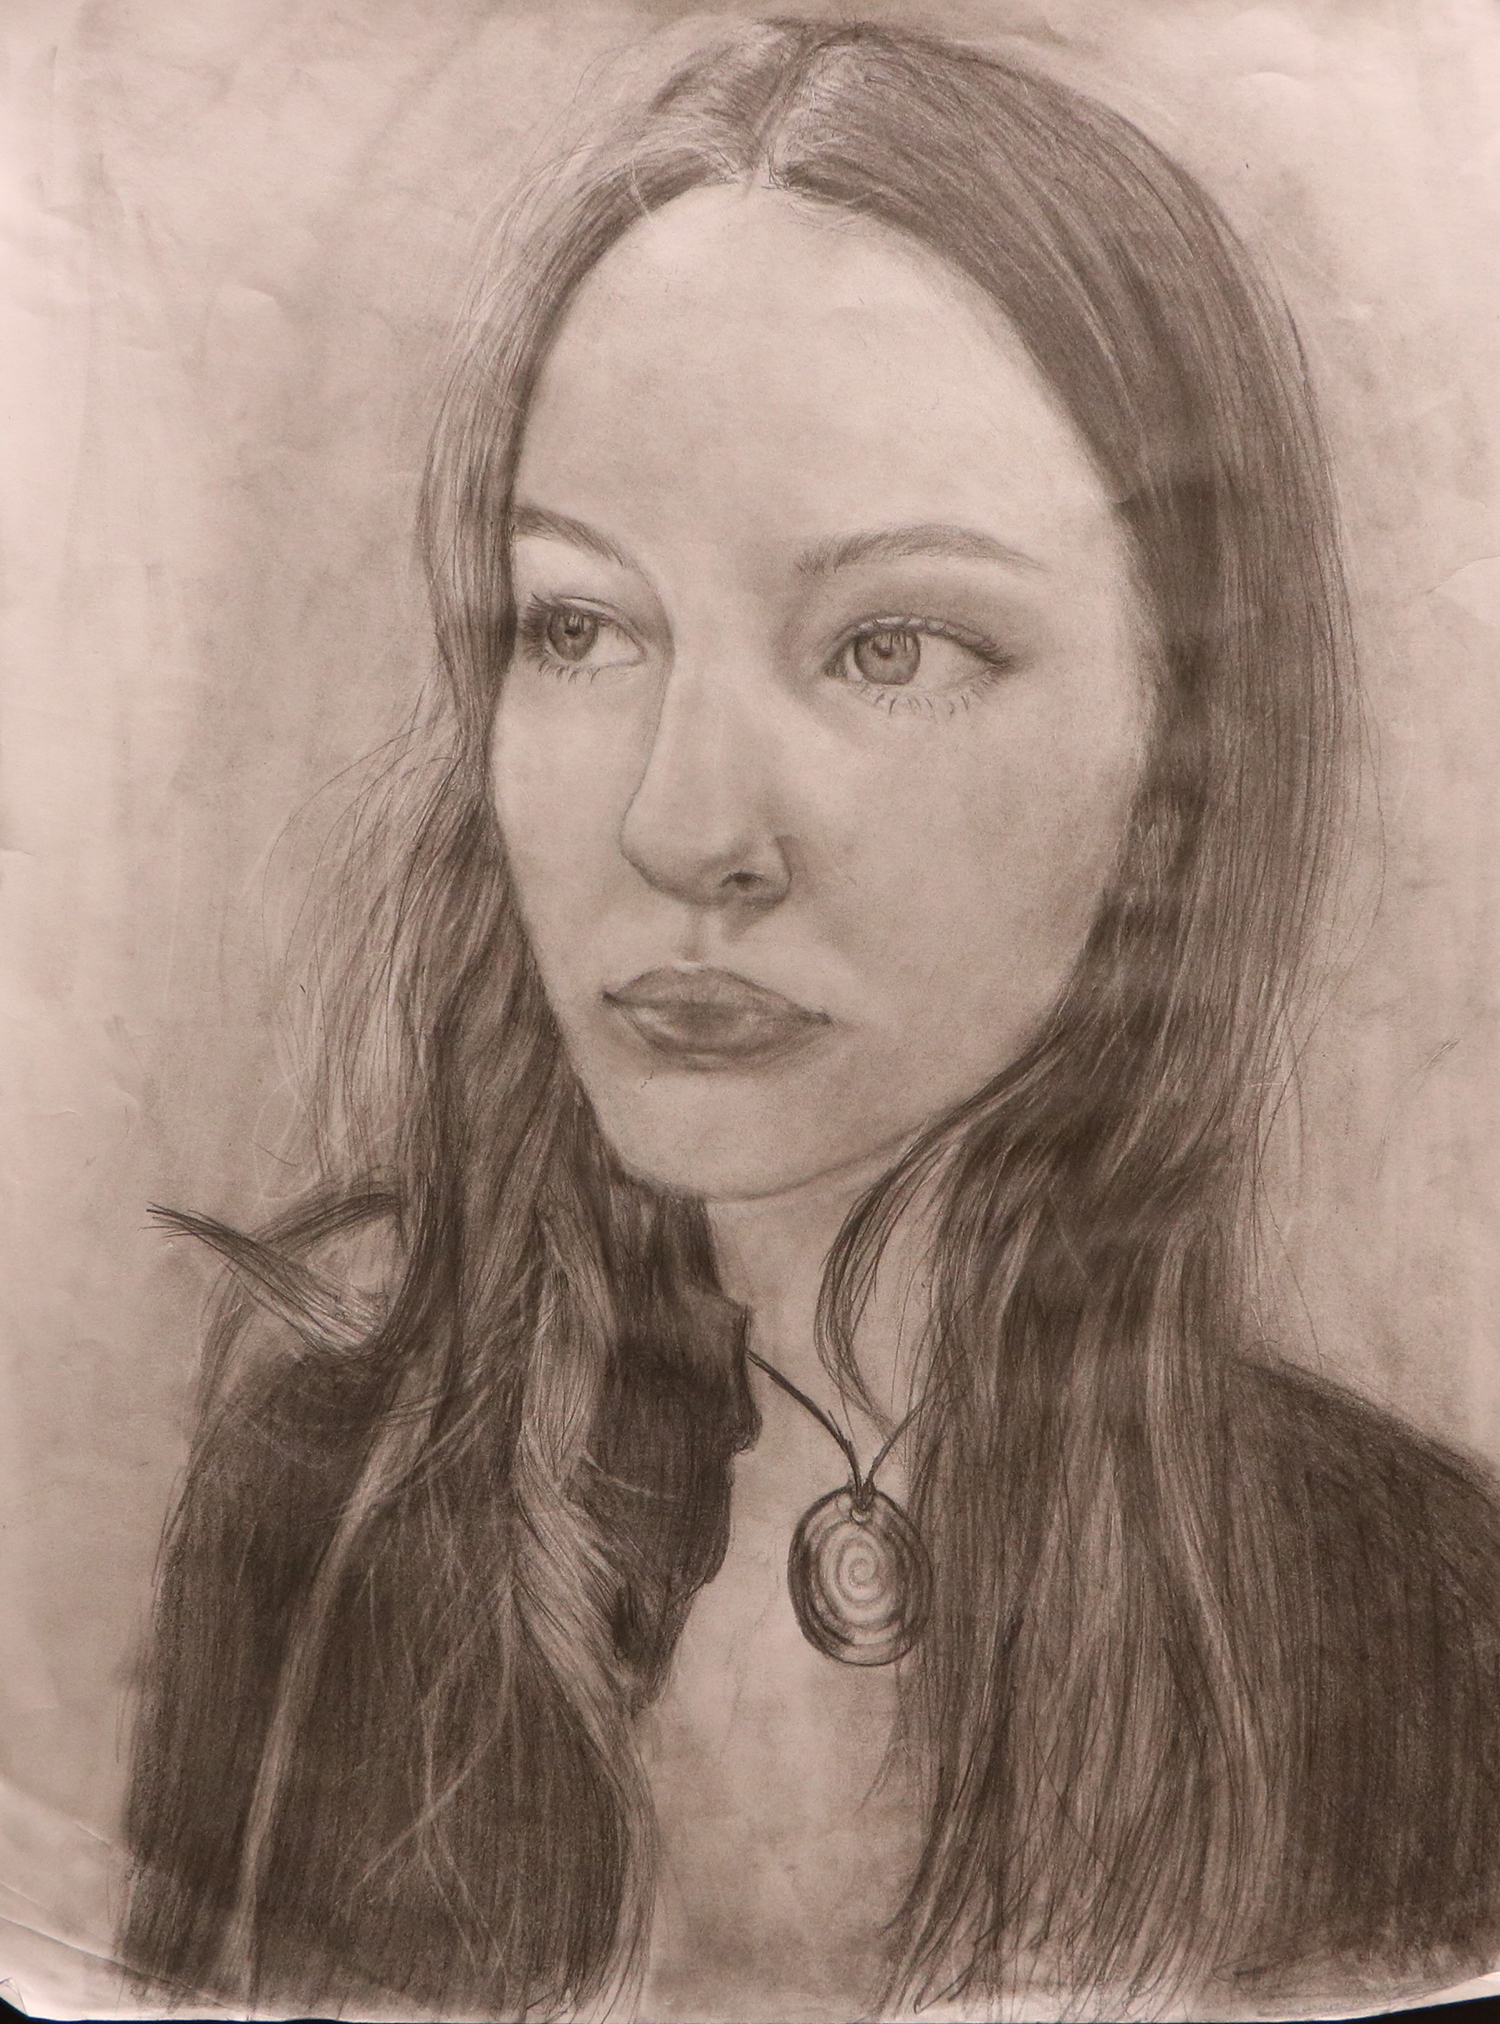 “Self-Portrait" by Ilana S. Londry